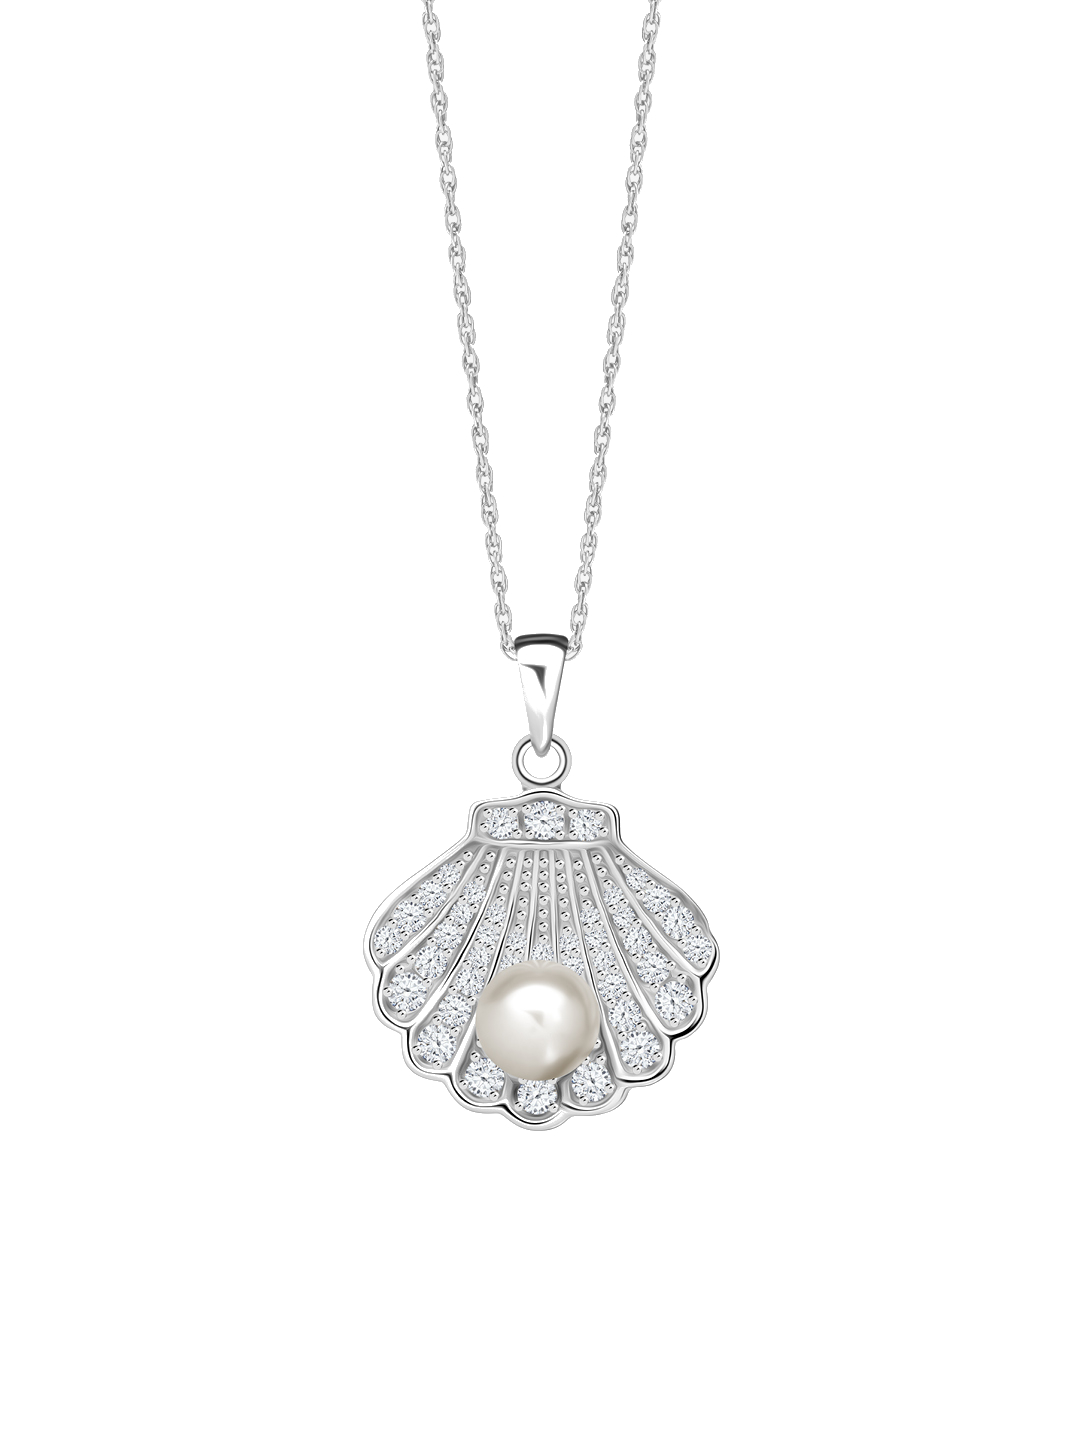 Preciosa Nádherný stříbrný náhrdelník Birth of Venus s říční perlou a kubickou zirkonií Preciosa 534